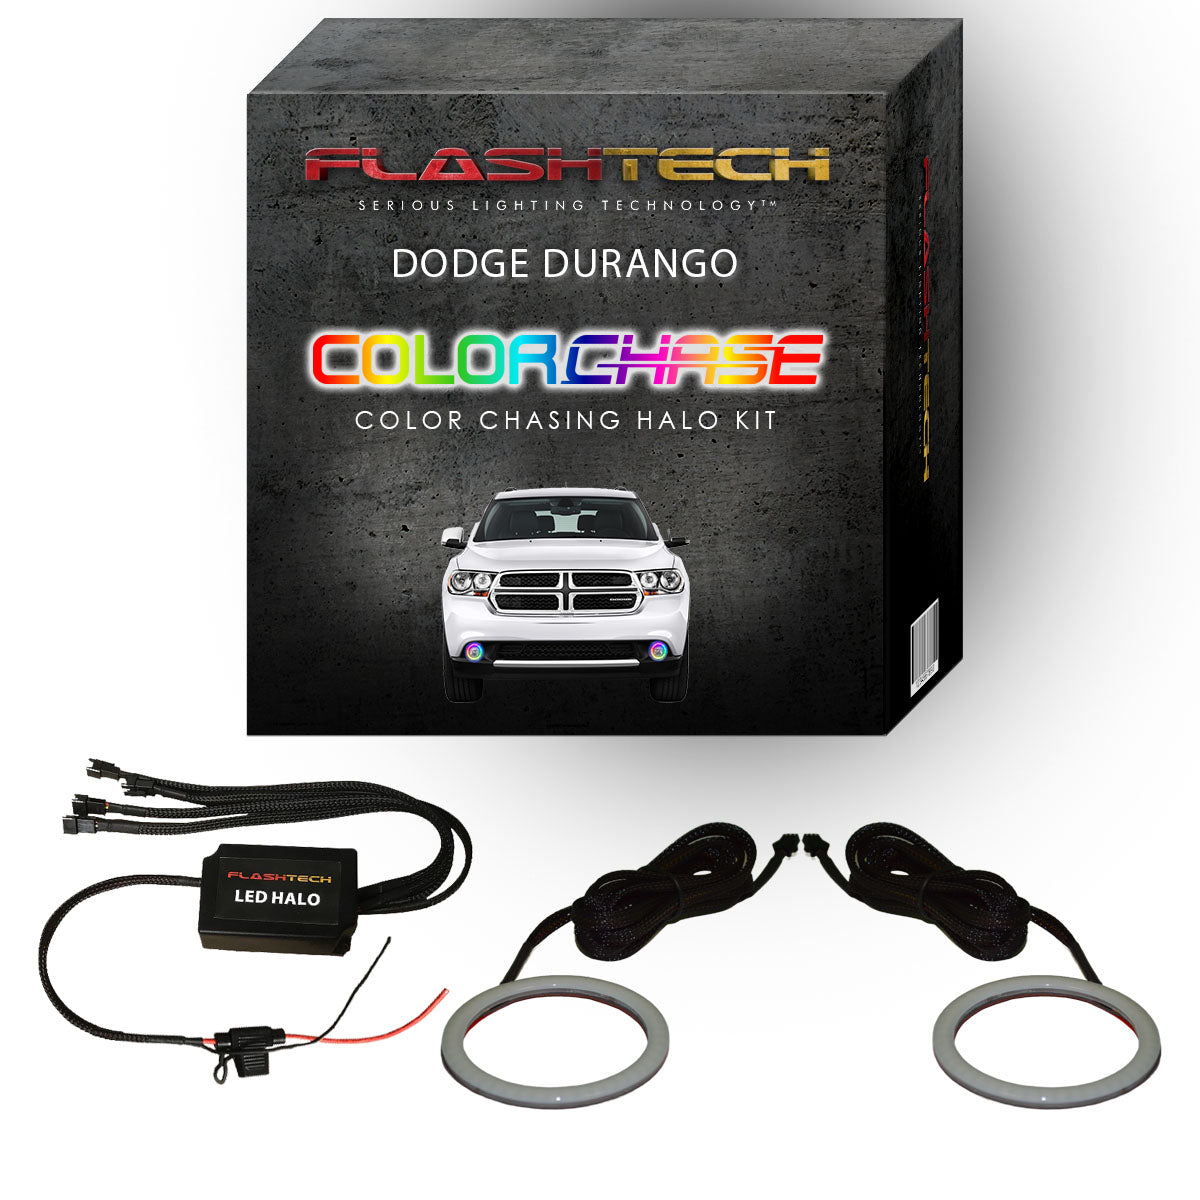 Dodge Durango ColorChase LED Halo Fog Light Kit 2011-2013